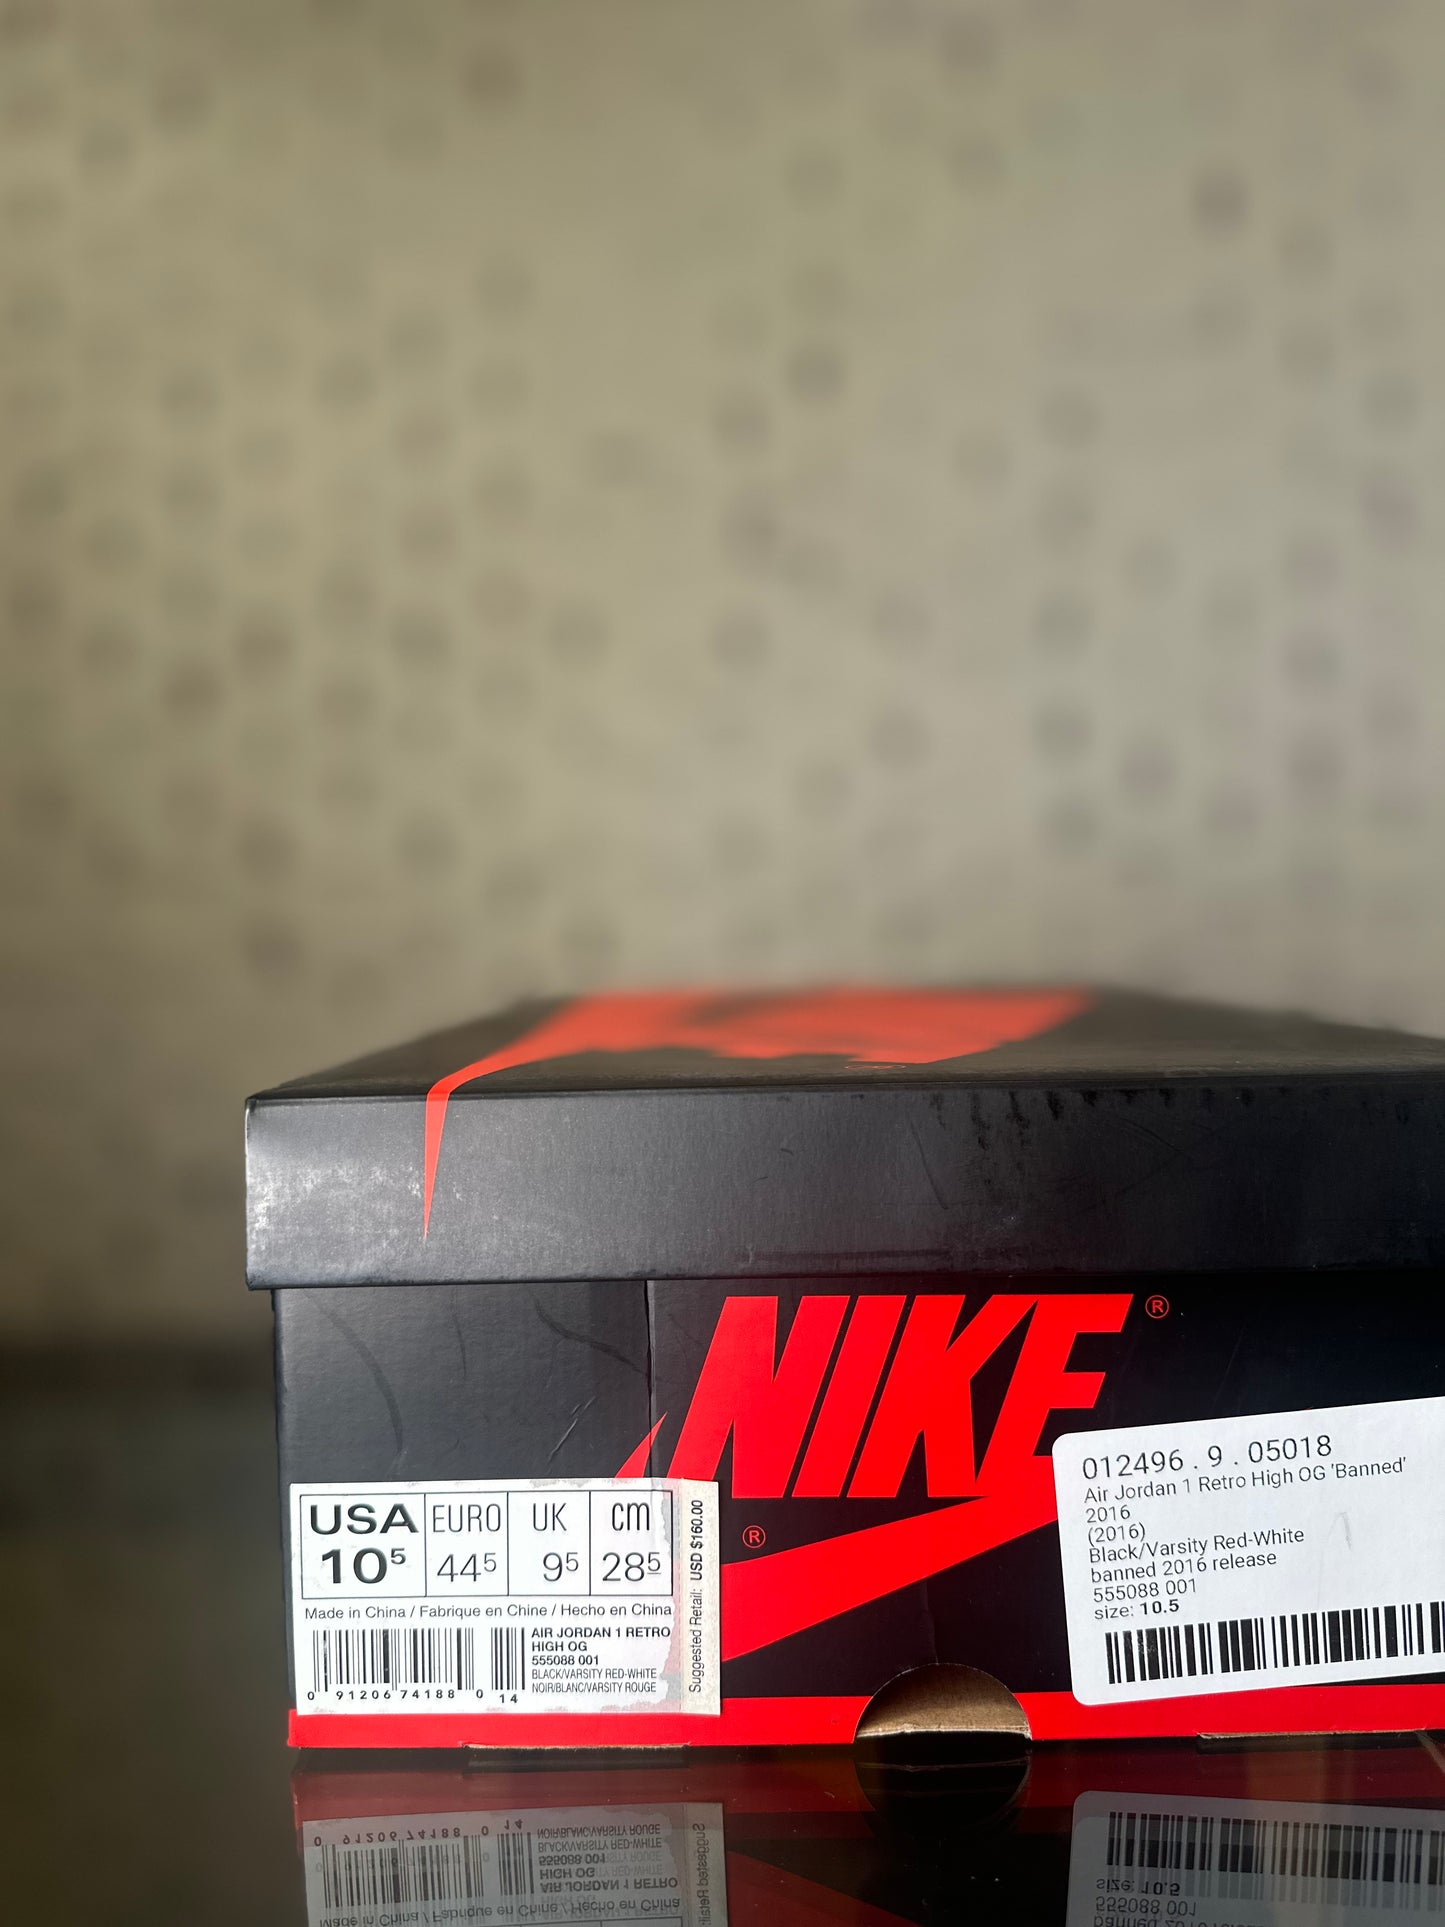 Air Jordan 1 High OG Retro (2016) “Banned” Size 10.5 DS OG